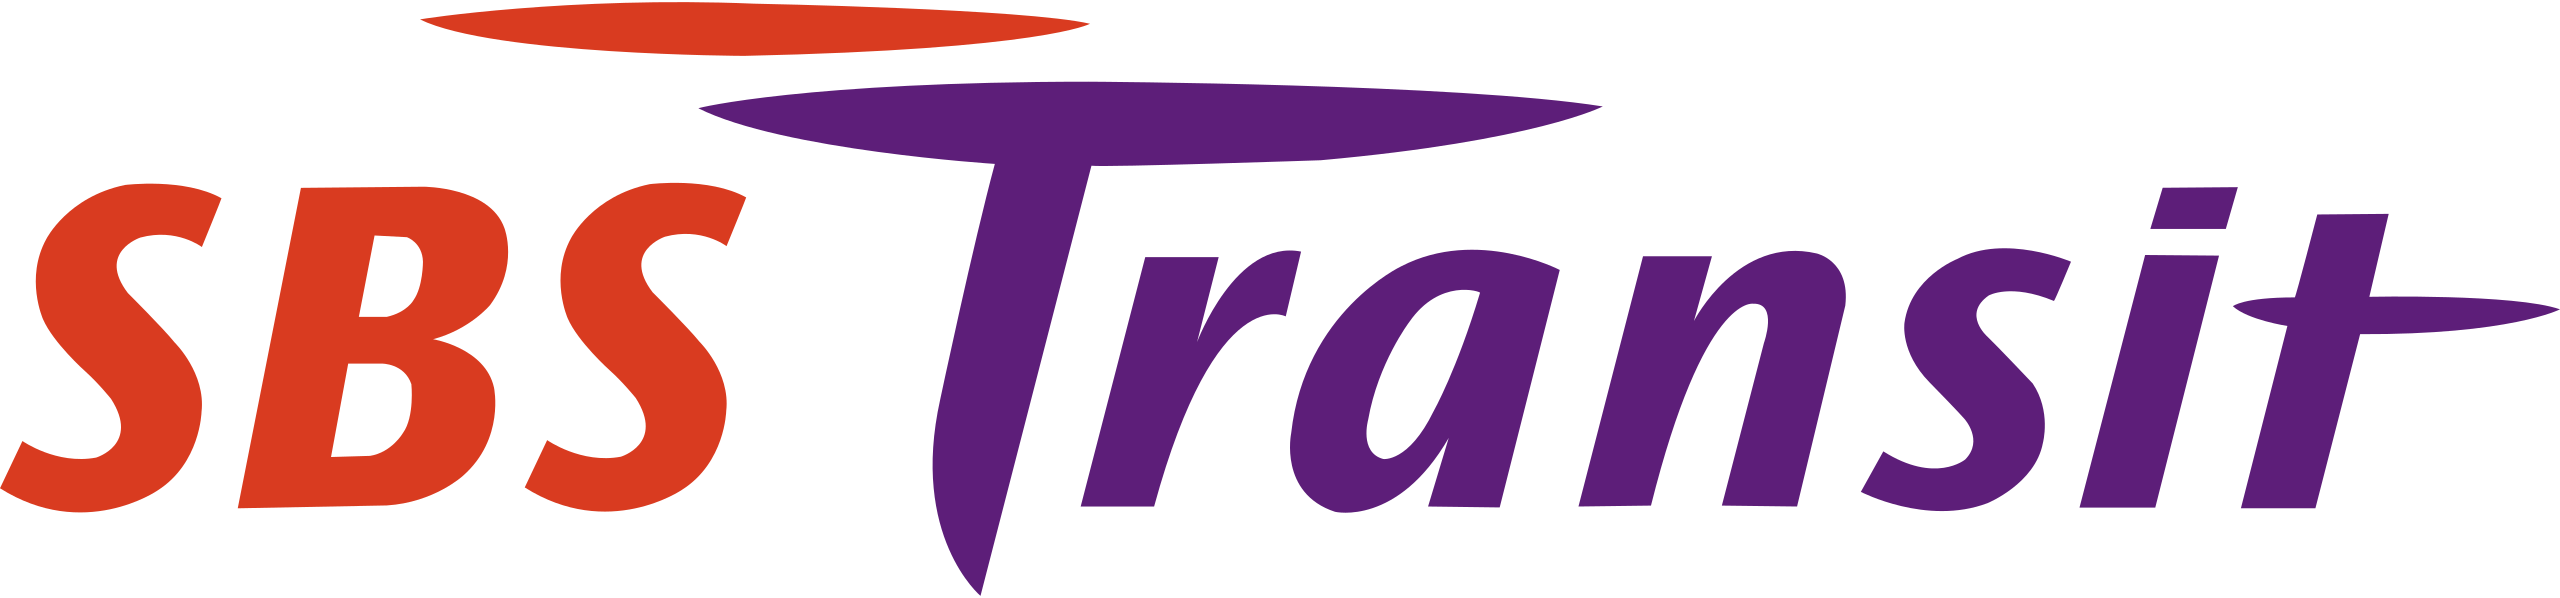 SBS_Transit_logo